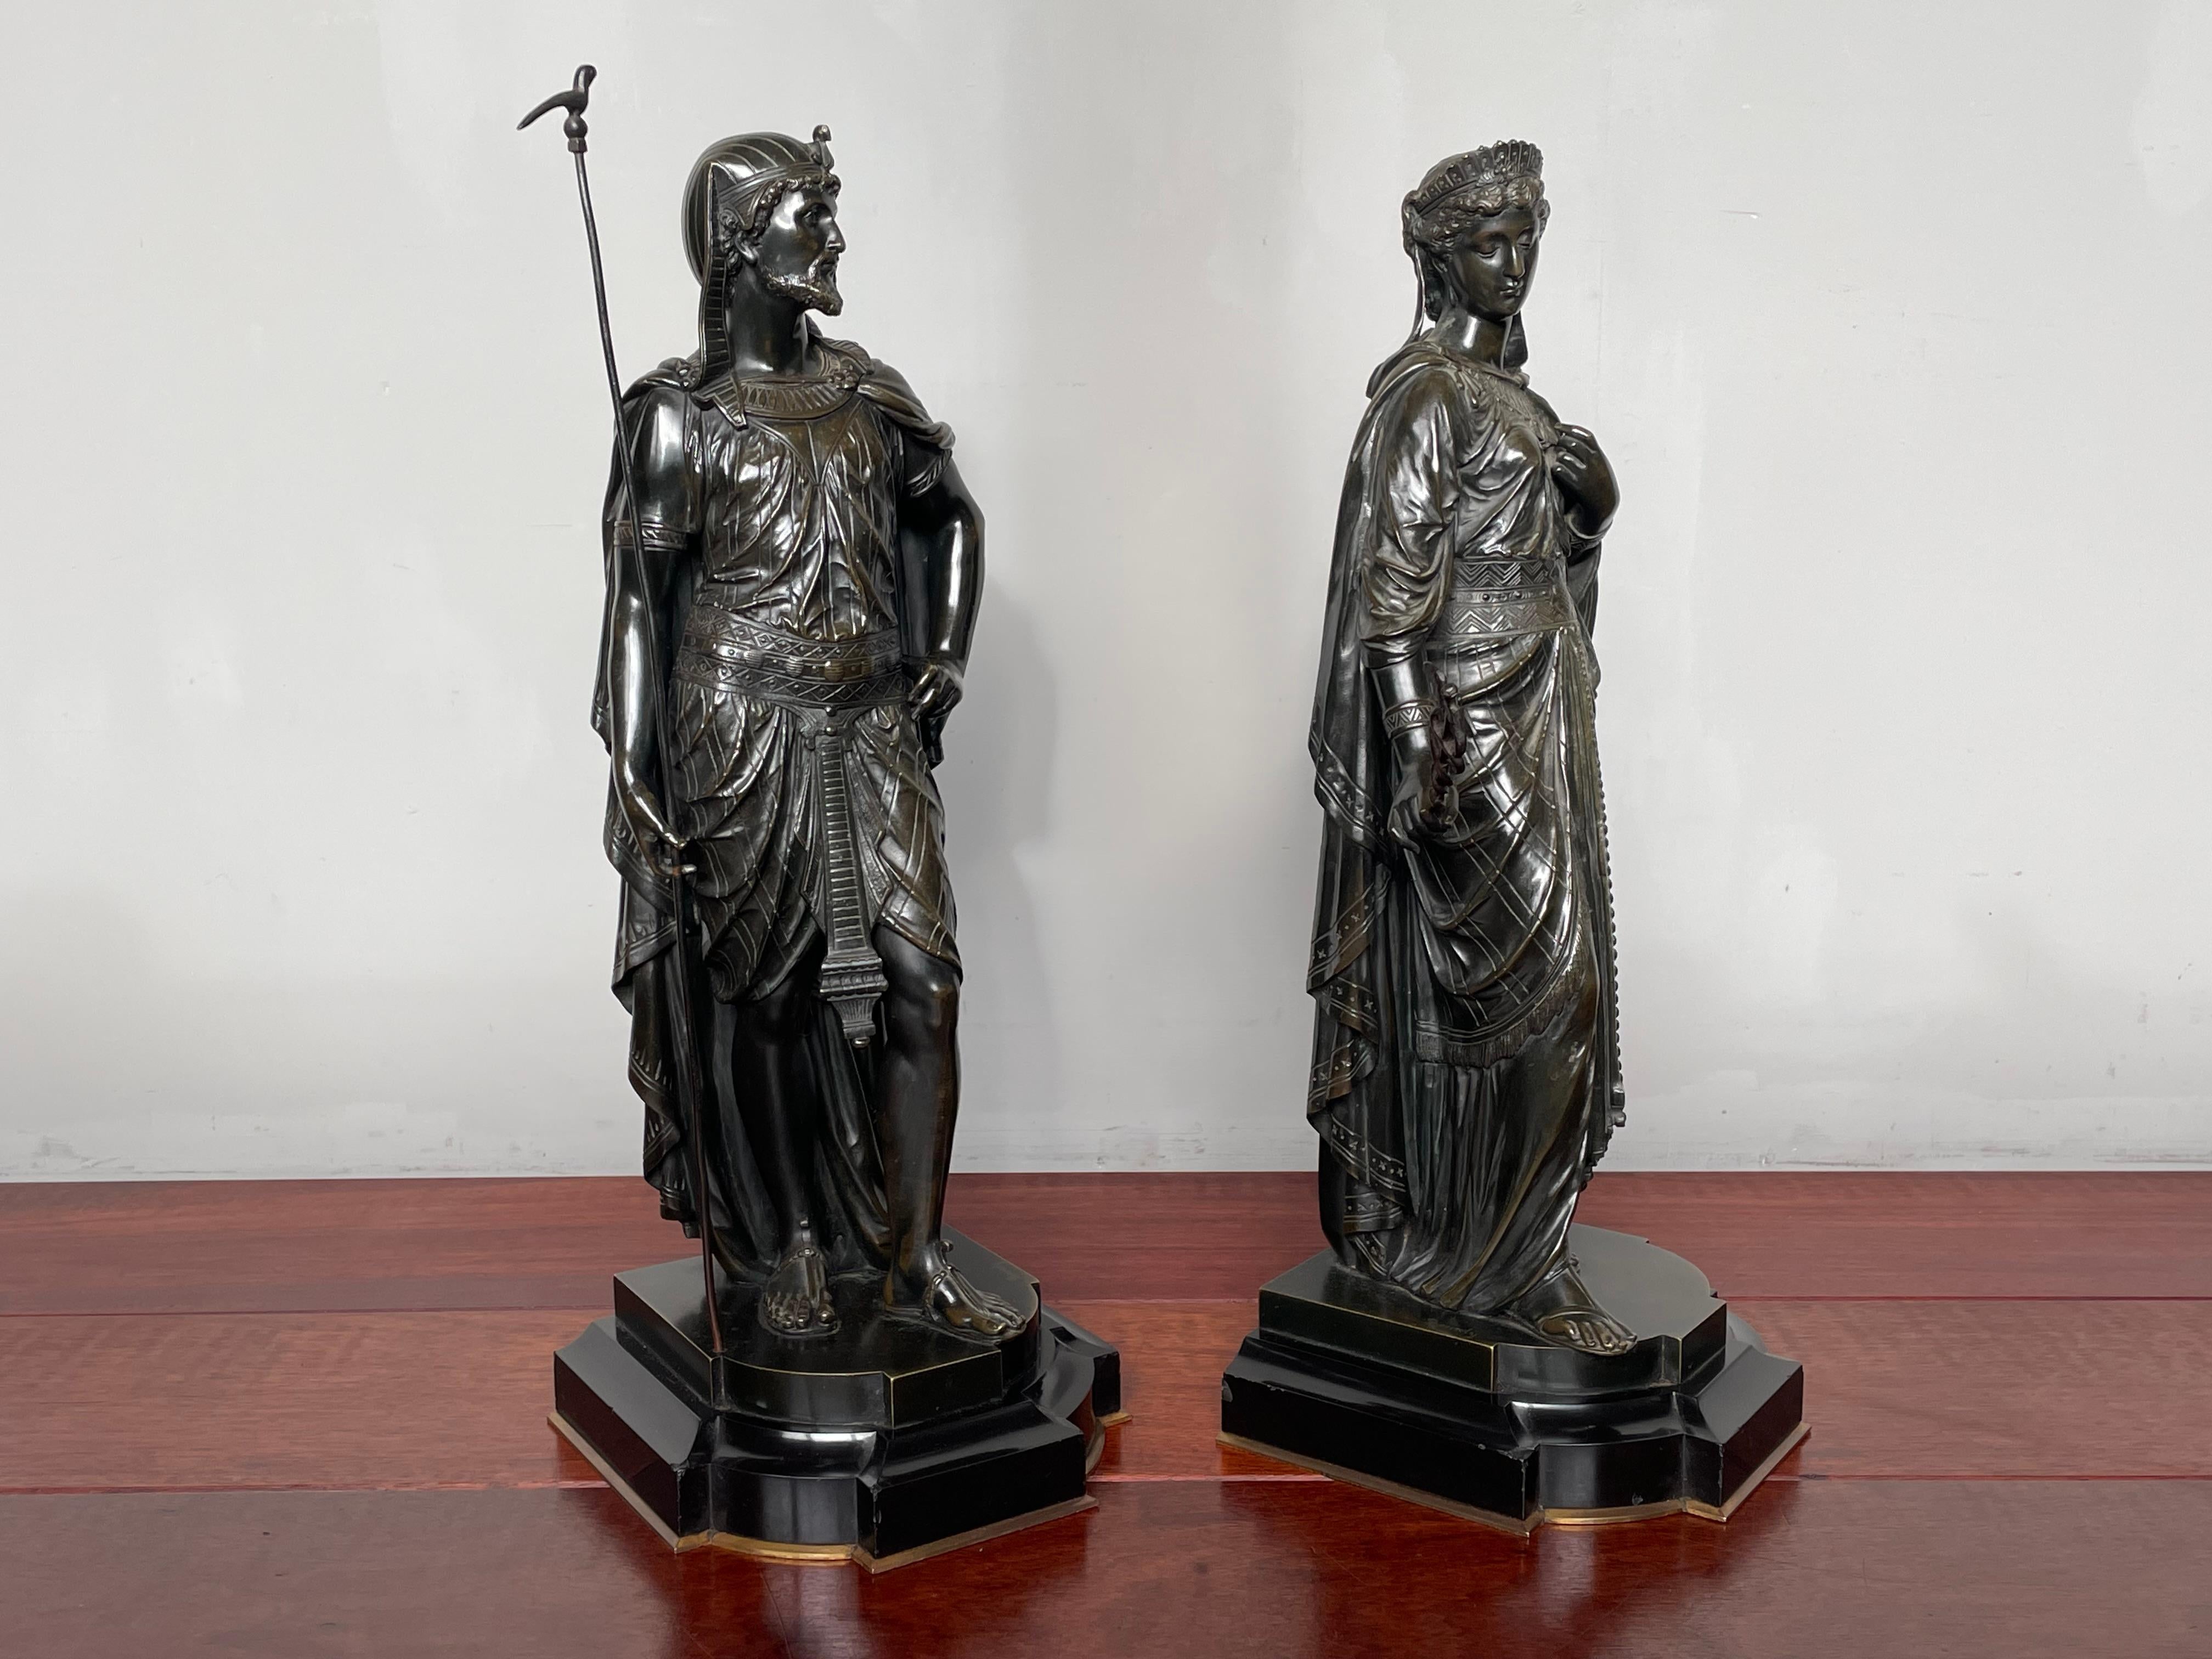 Atemberaubendes Paar antiker Bronzestatuen von höchster Qualität.

Wenn Sie sich für außergewöhnliche Antiquitäten im Allgemeinen und für Antiquitäten im ägyptischen Revival im Besonderen interessieren, dann könnte dieses atemberaubende und